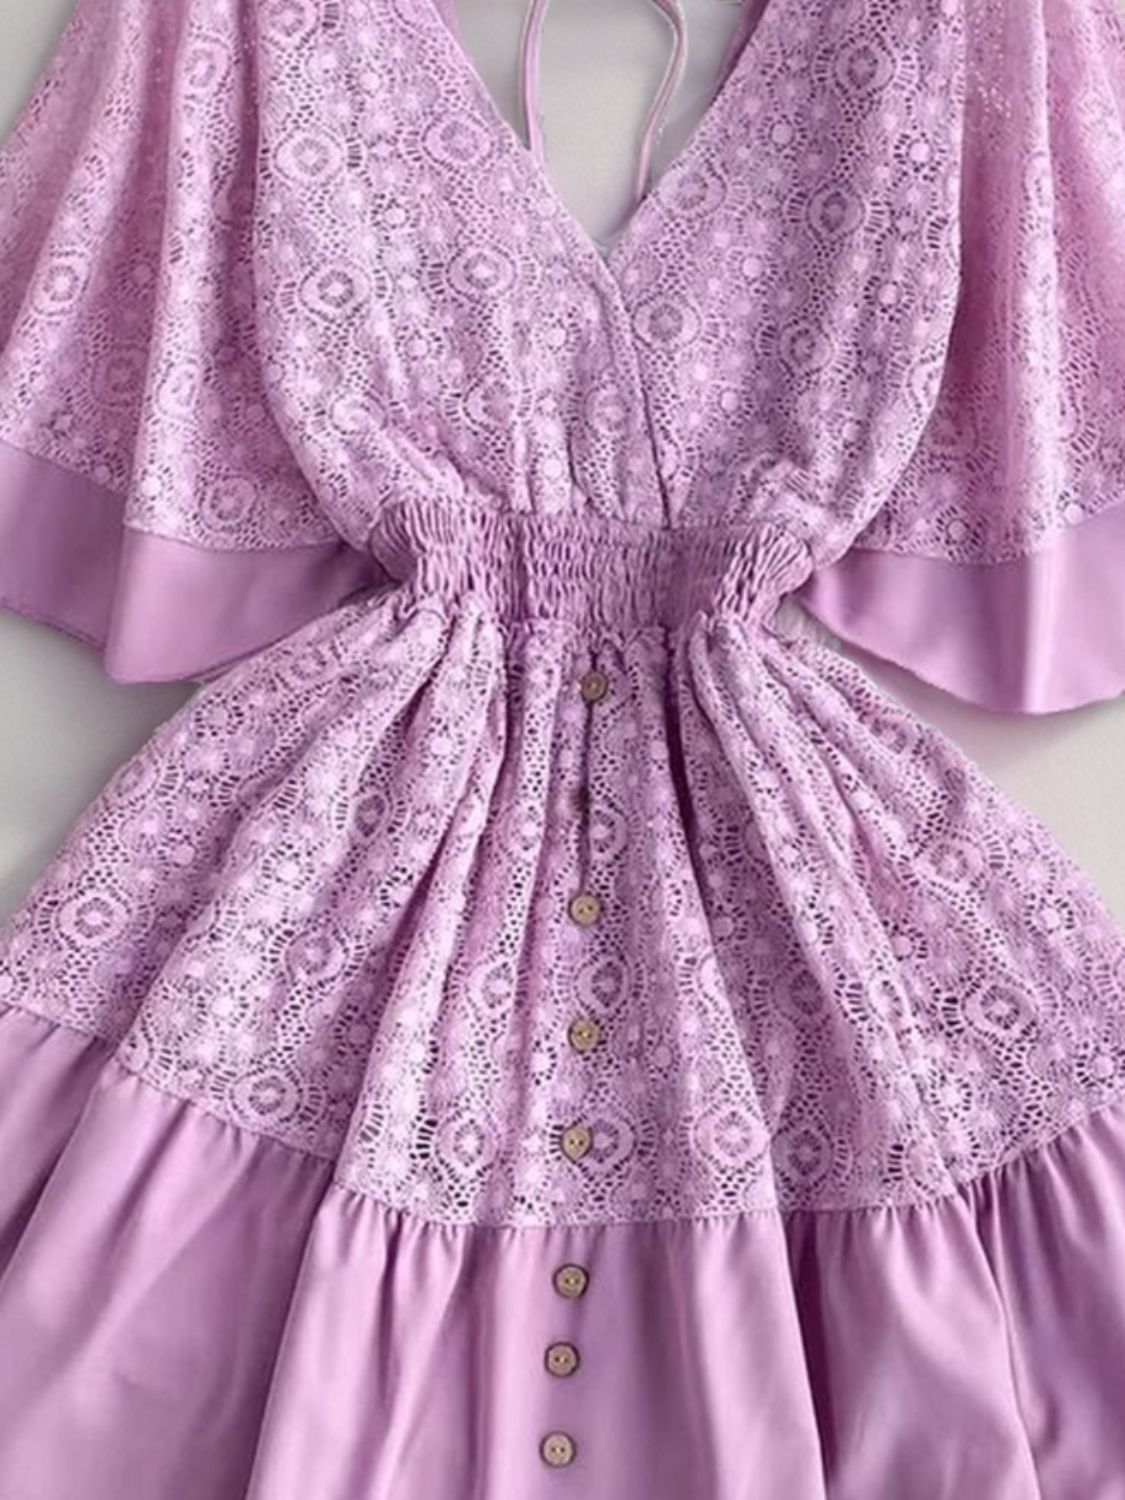 TEEK - Lace Cutout Half Sleeve Mini Dress DRESS TEEK Trend   